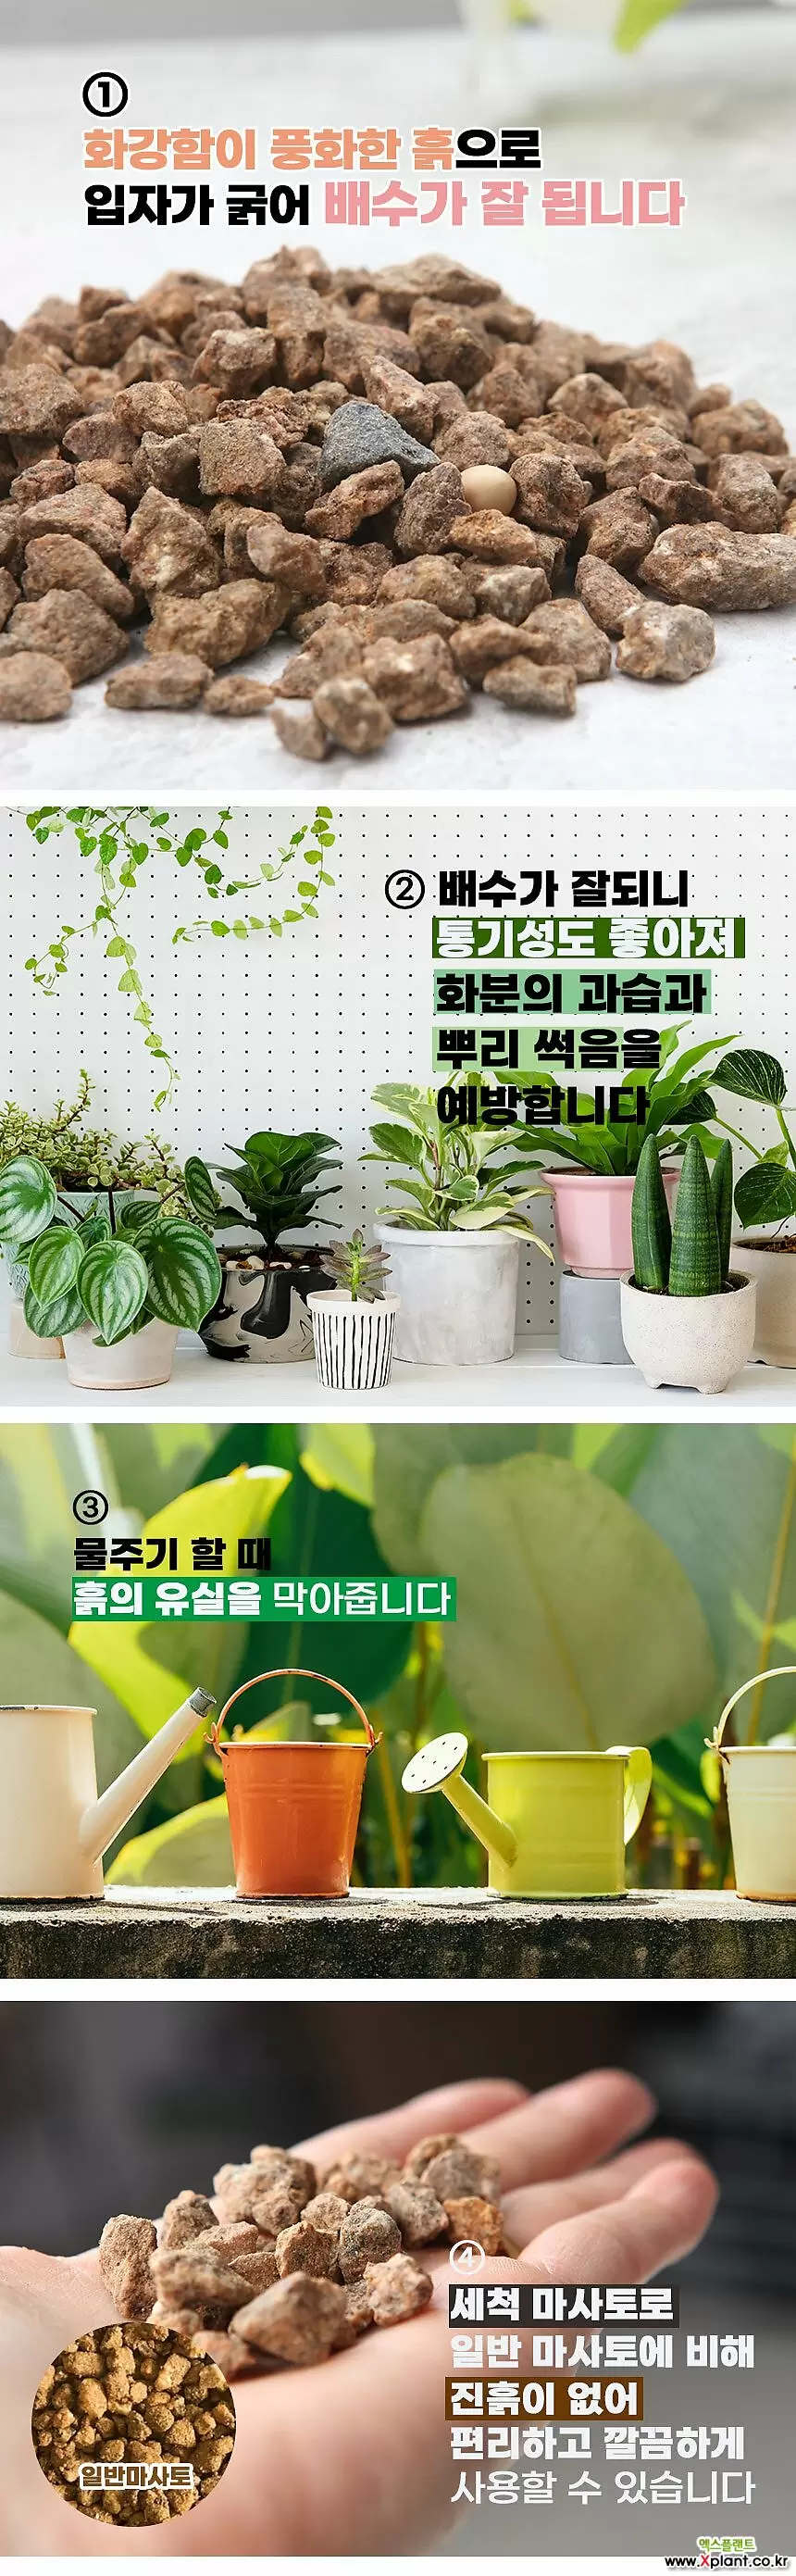 국민마사토 김해세척마사(대립)-주말농장 식물보호제 영양제 활력제 인아트스튜디오